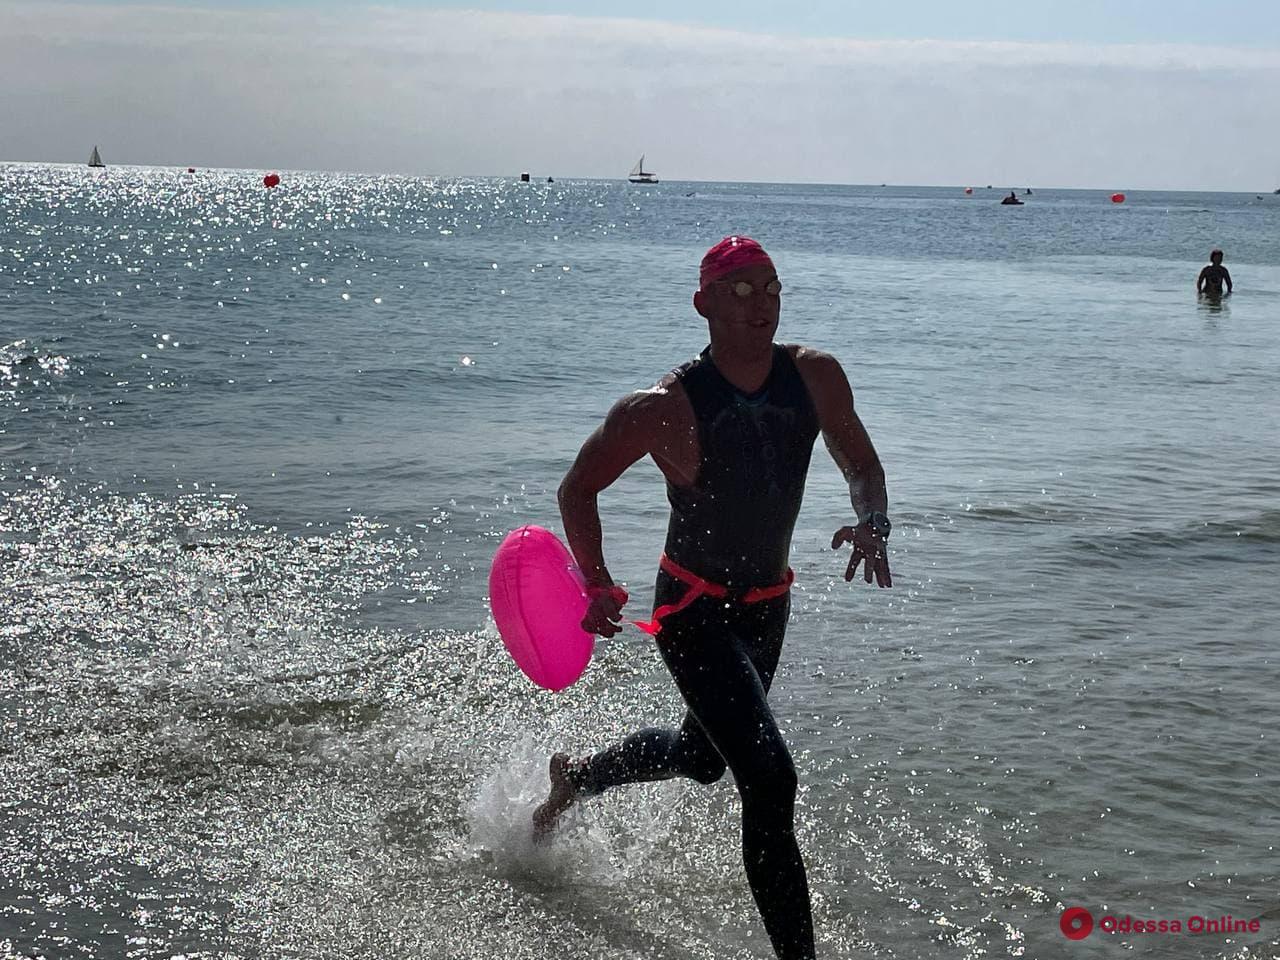 На Ланжероне проходят соревнования по плаванию на открытой воде Oceanman